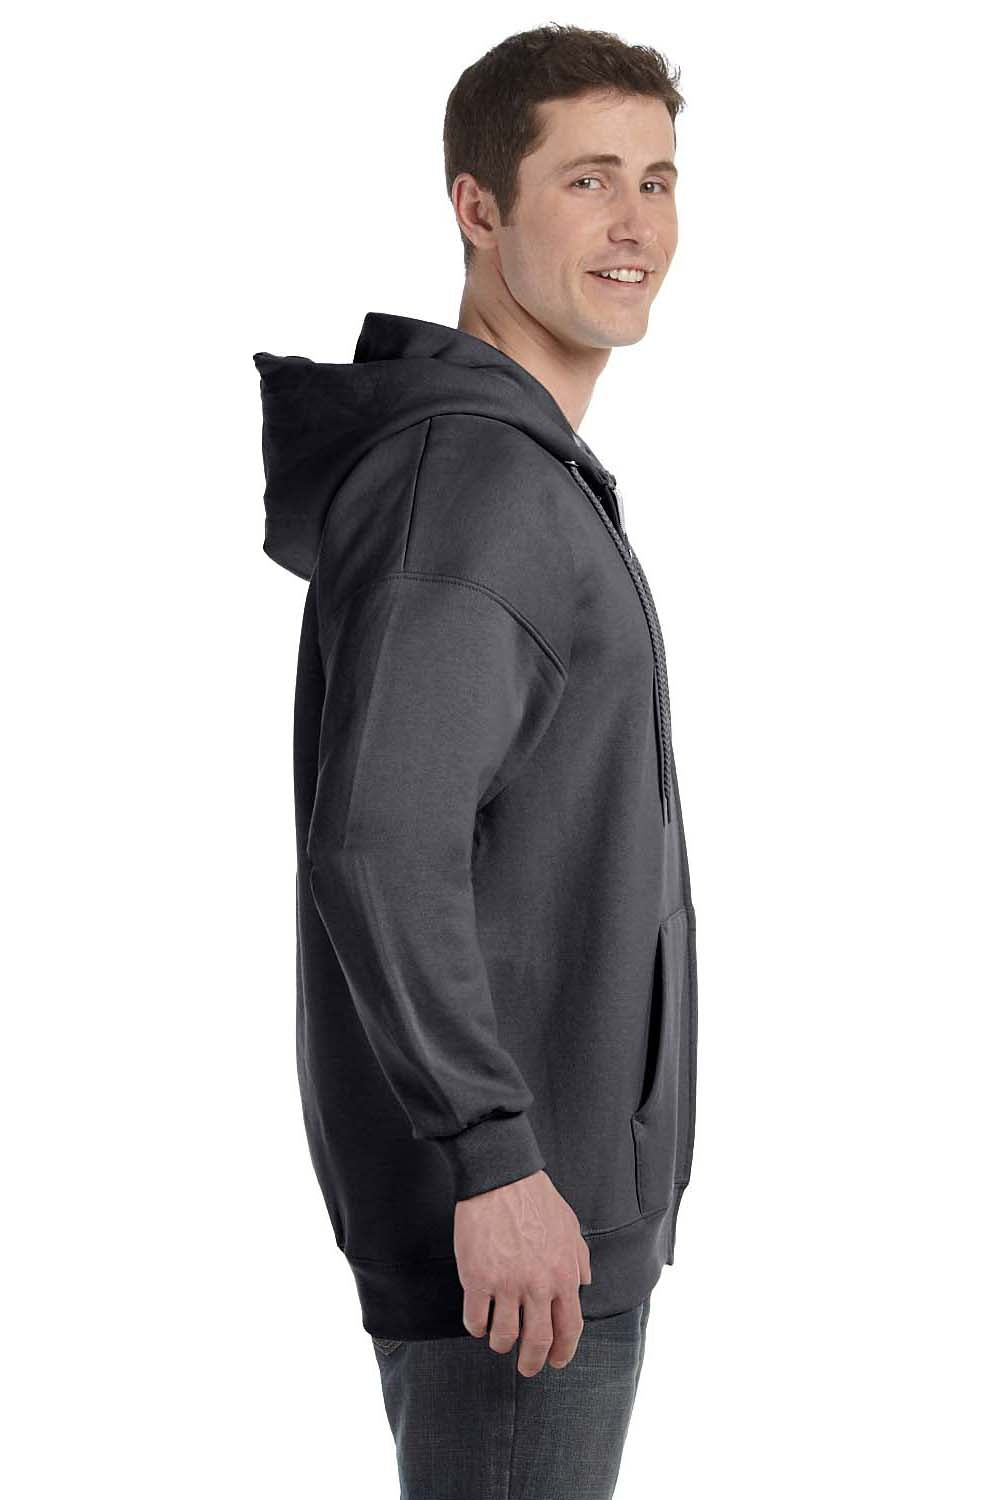 Hanes F280 Mens Ultimate Cotton PrintPro XP Full Zip Hooded Sweatshirt Hoodie Heather Charcoal Grey Side